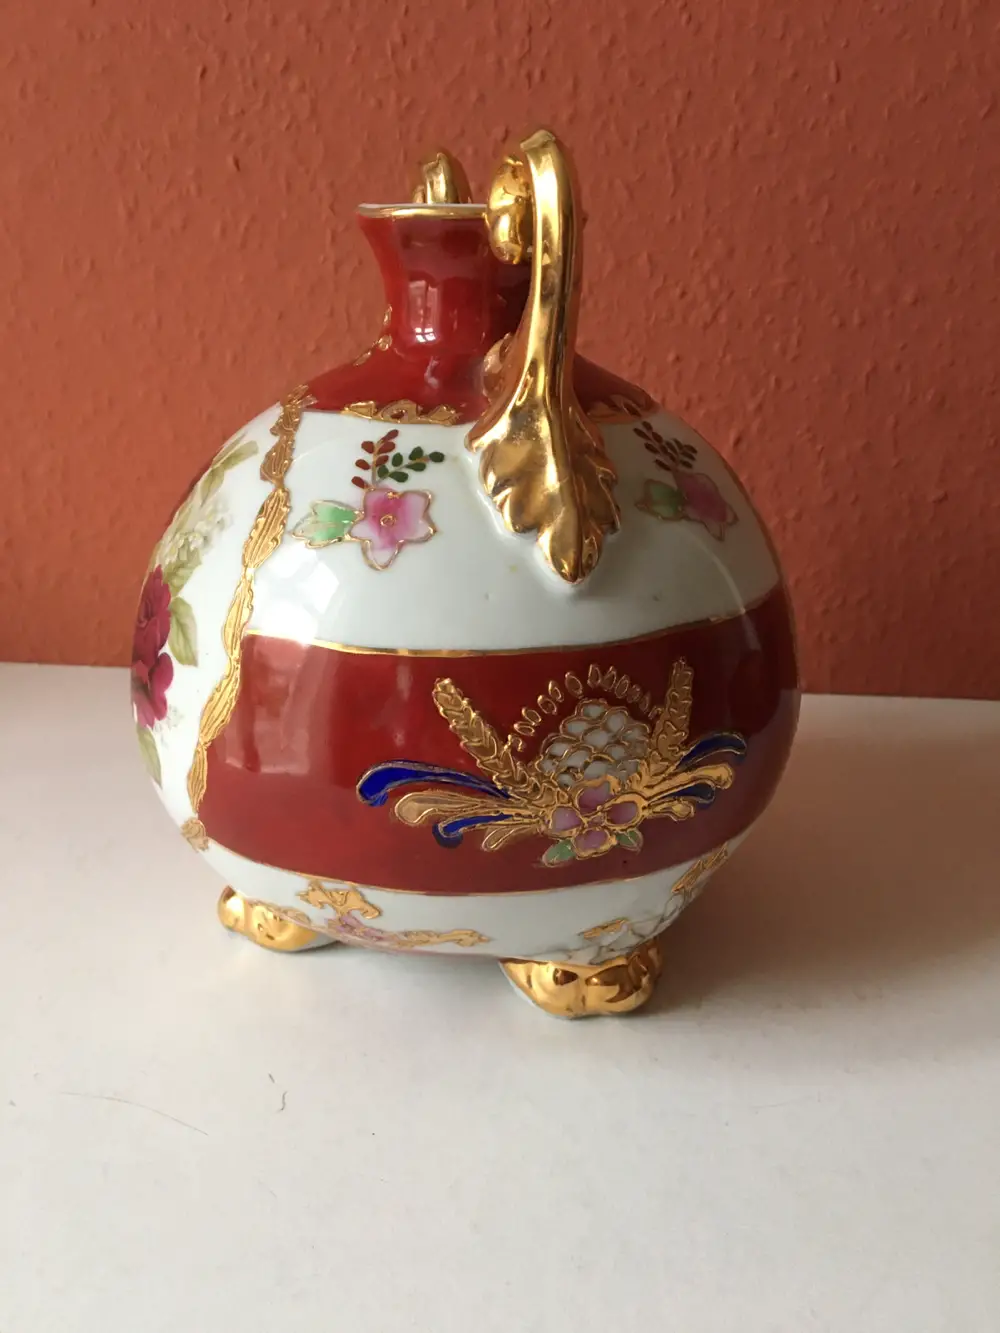 Make in china vase